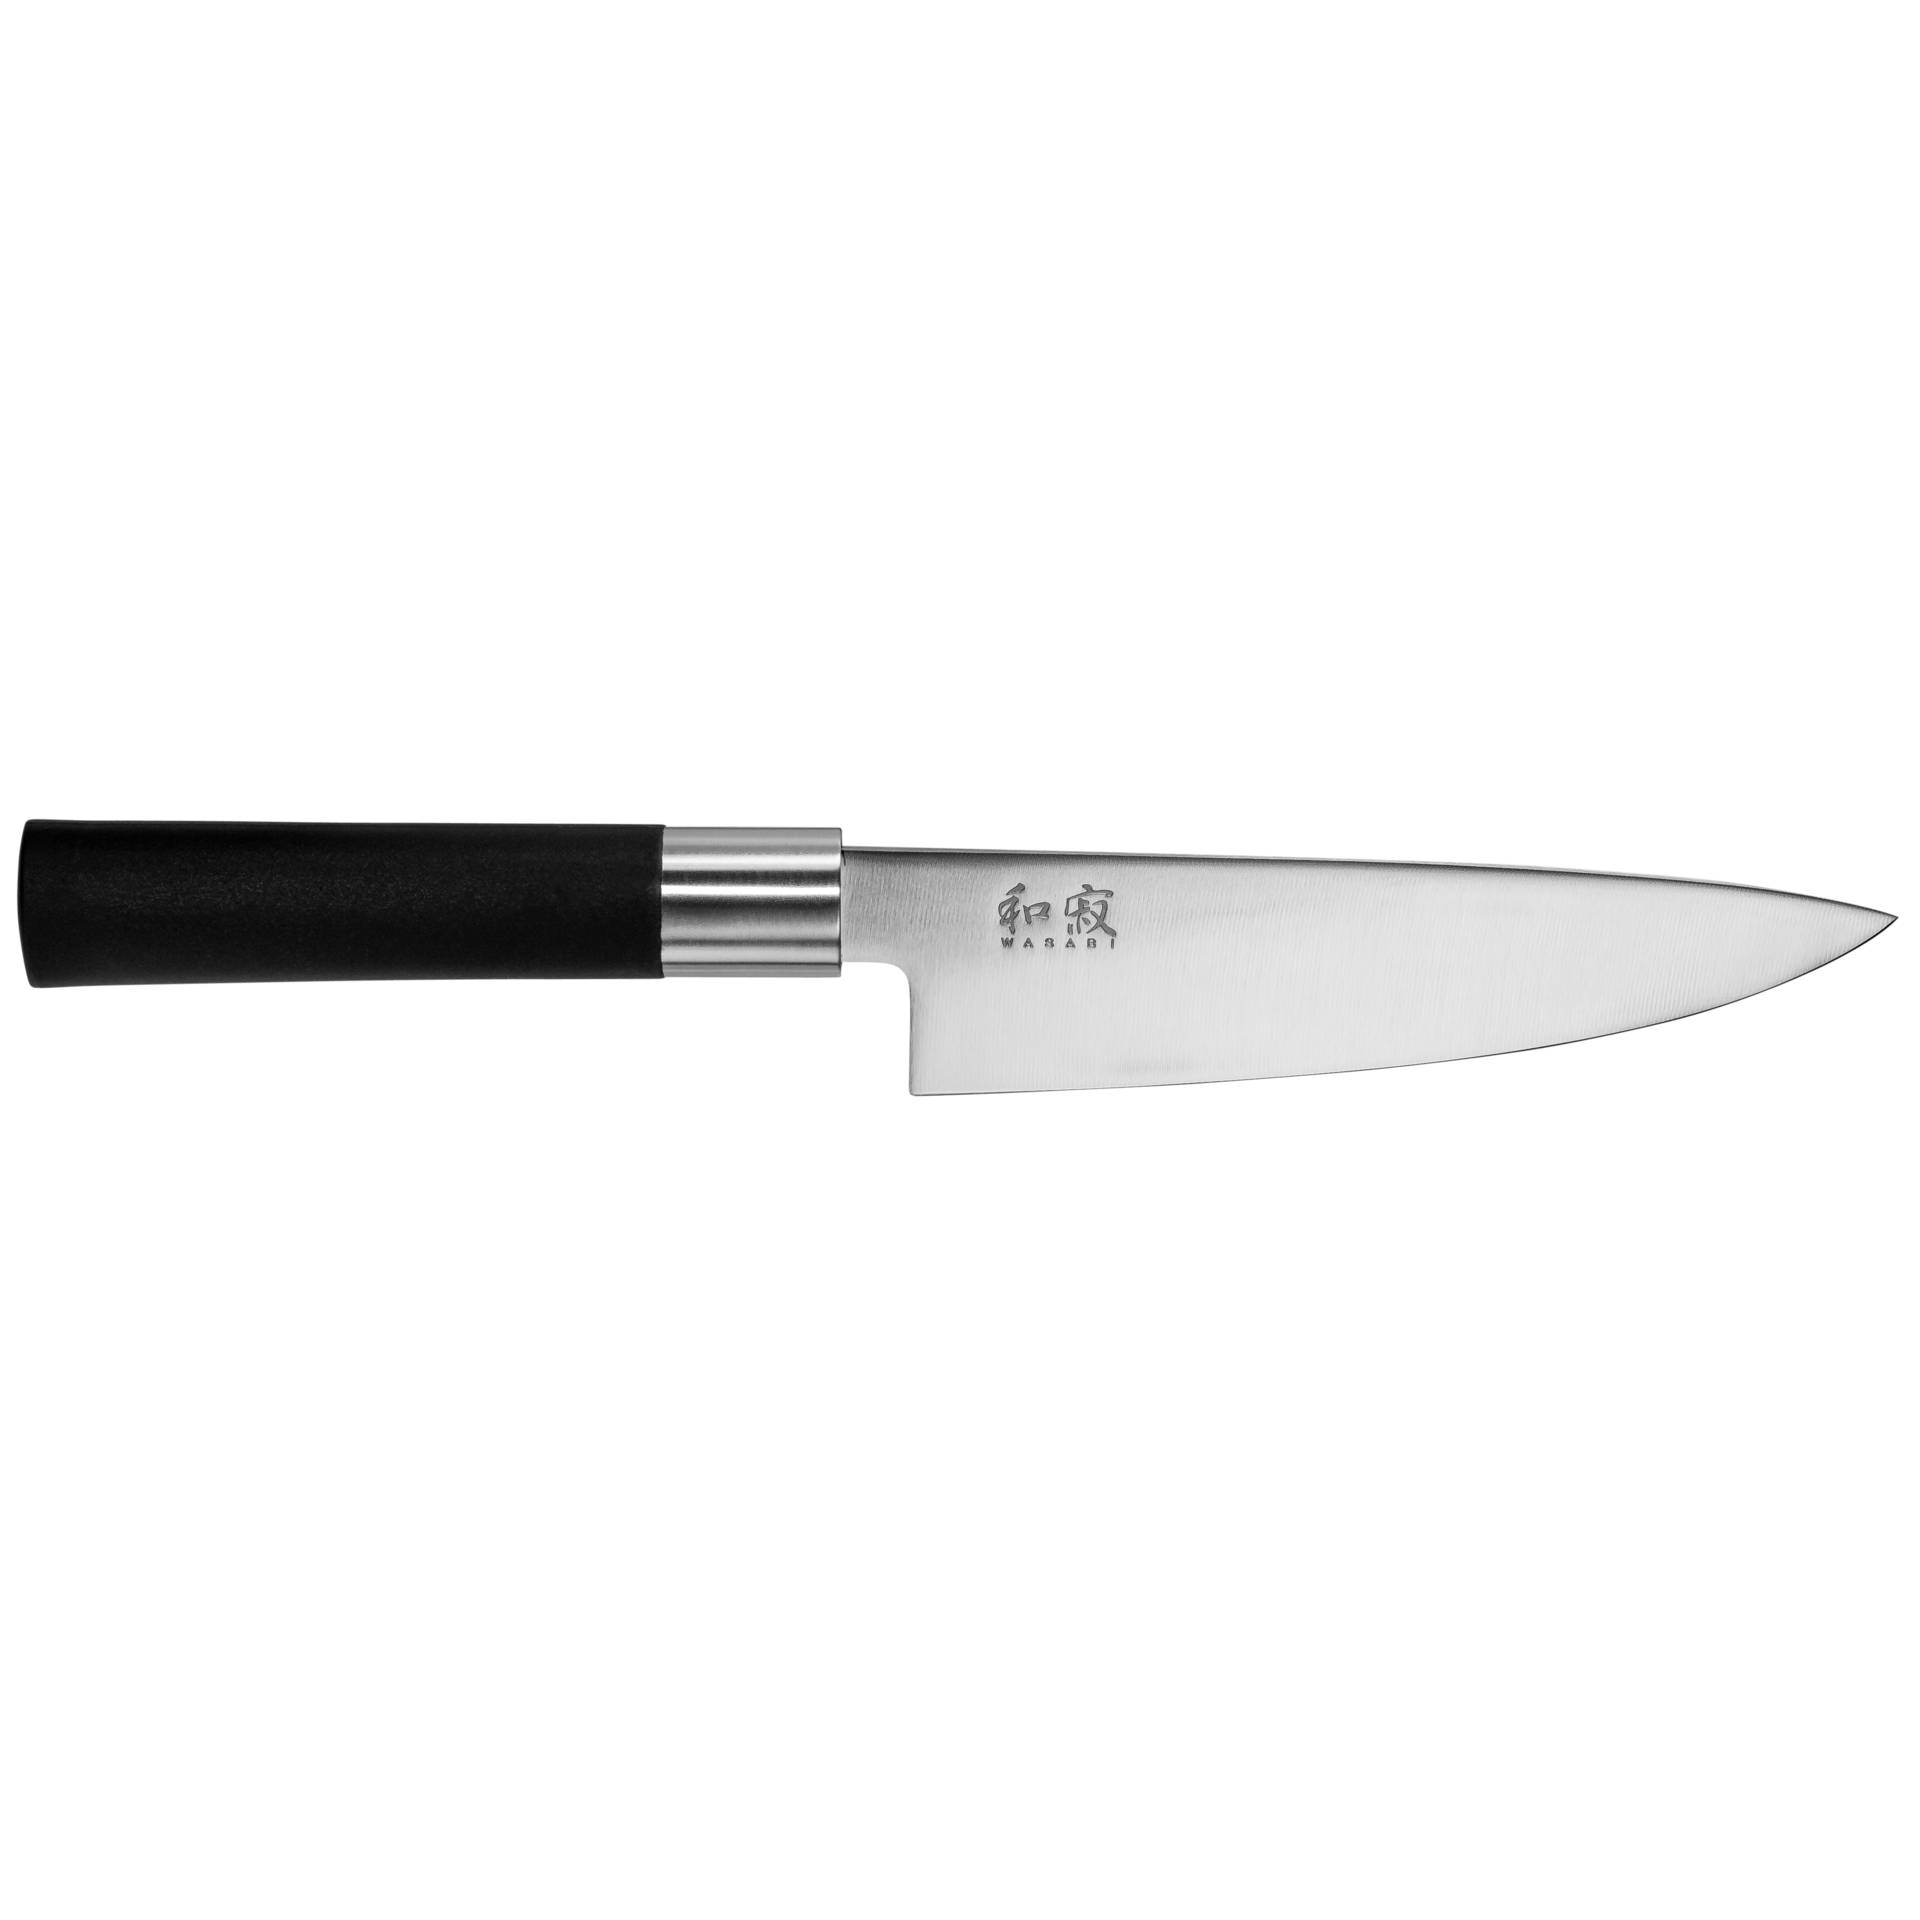 KAI Wasabi nero coltello cuoco 15,0cm